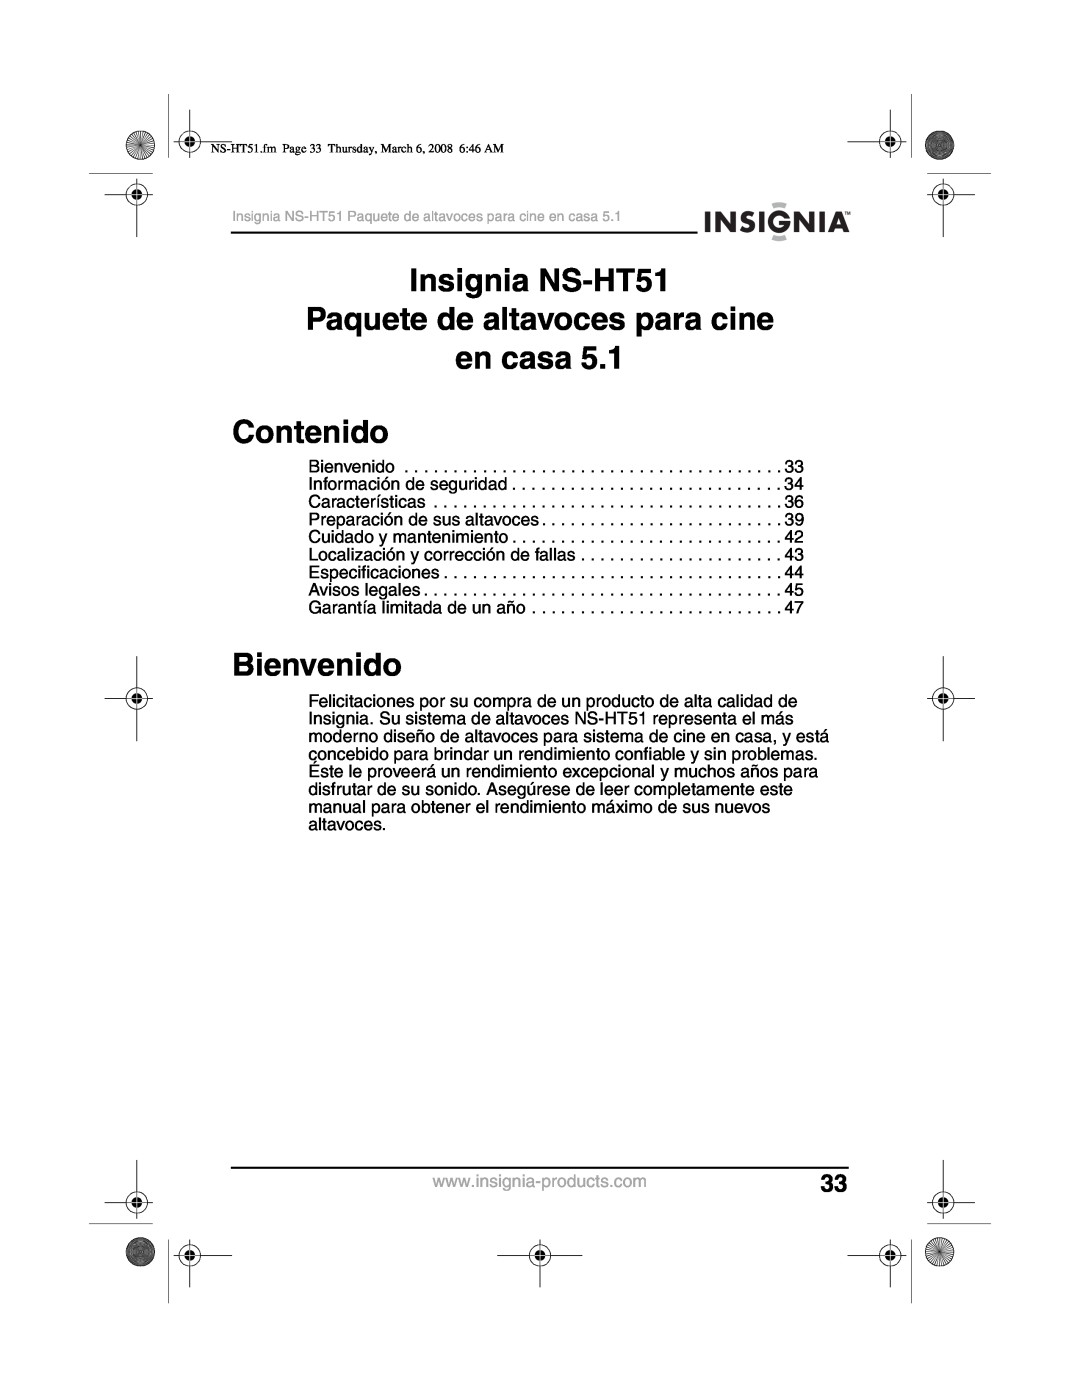 Insignia manual Insignia NS-HT51 Paquete de altavoces para cine, en casa Contenido, Bienvenido 